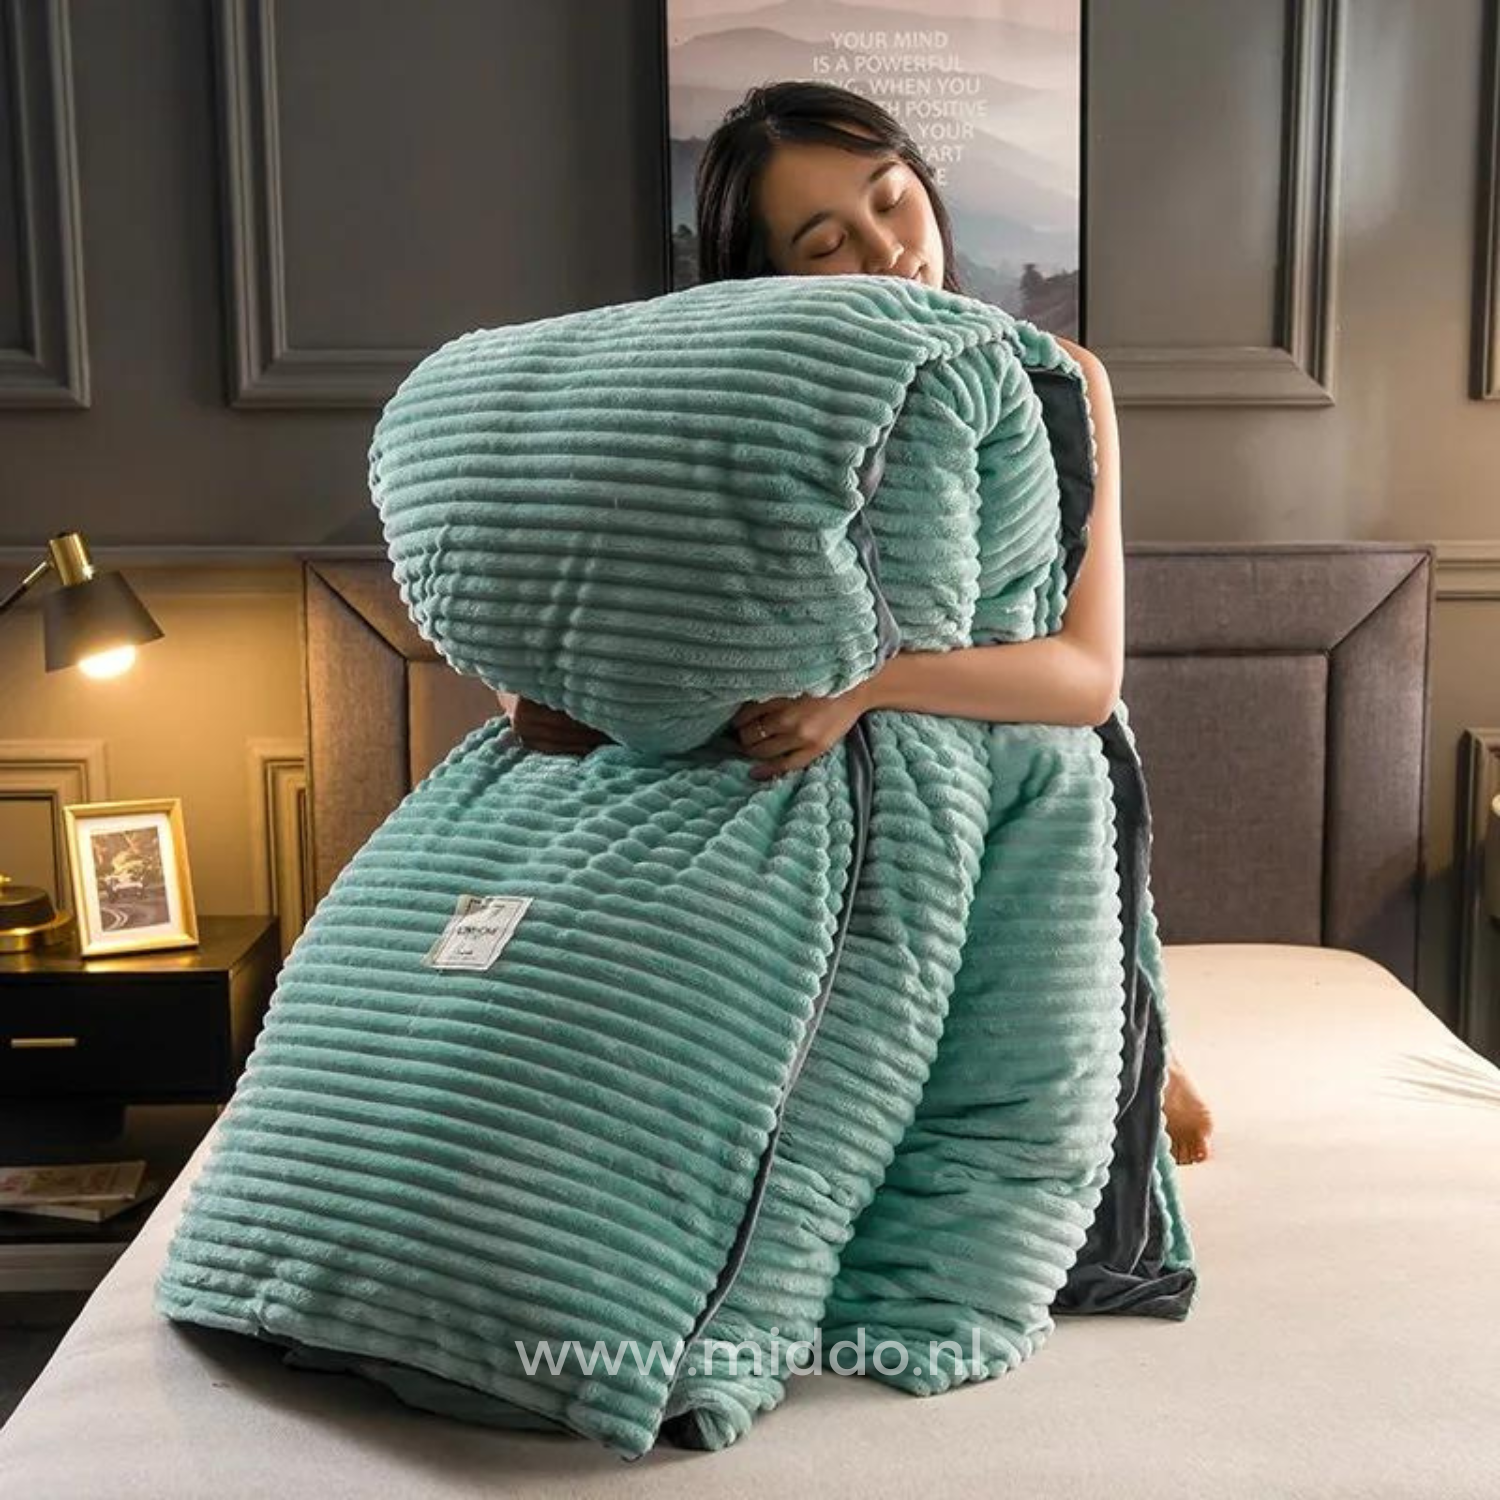 Vrouw met opgevouwen jadegroen dekbedovertrek met dekbed erin op een bed